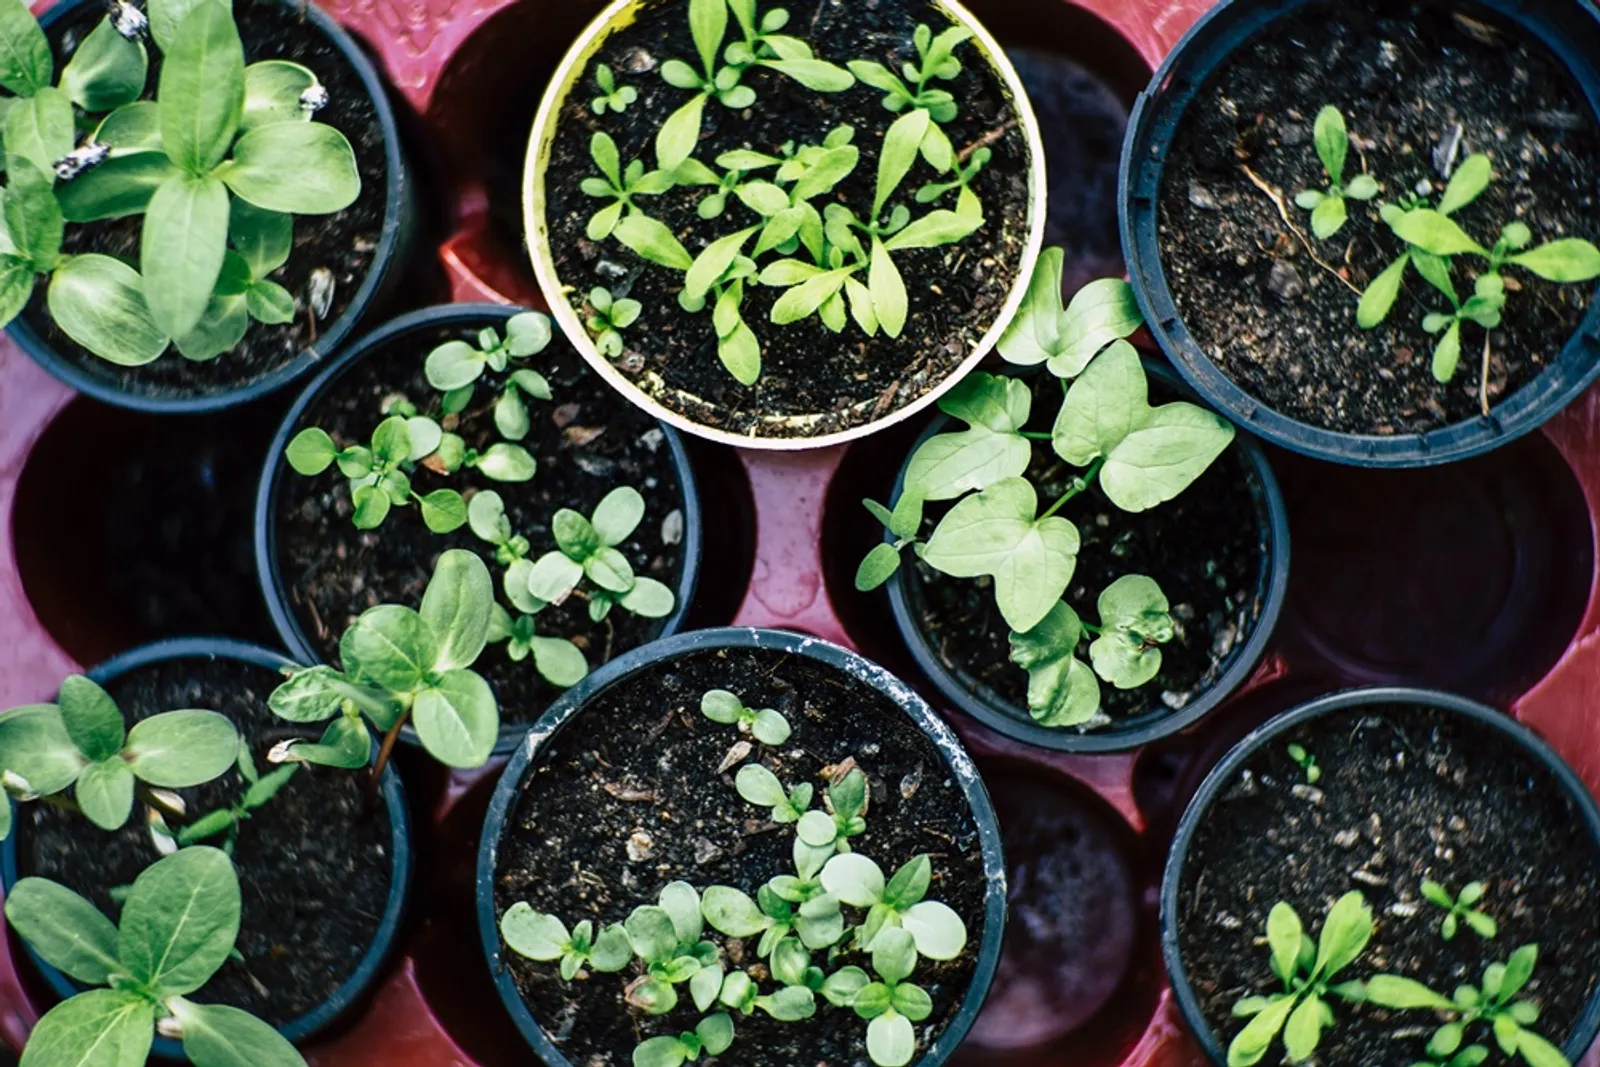 Punya Banyak Manfaat, Ini 10 Alasan Kamu Harus Memulai Urban Gardening